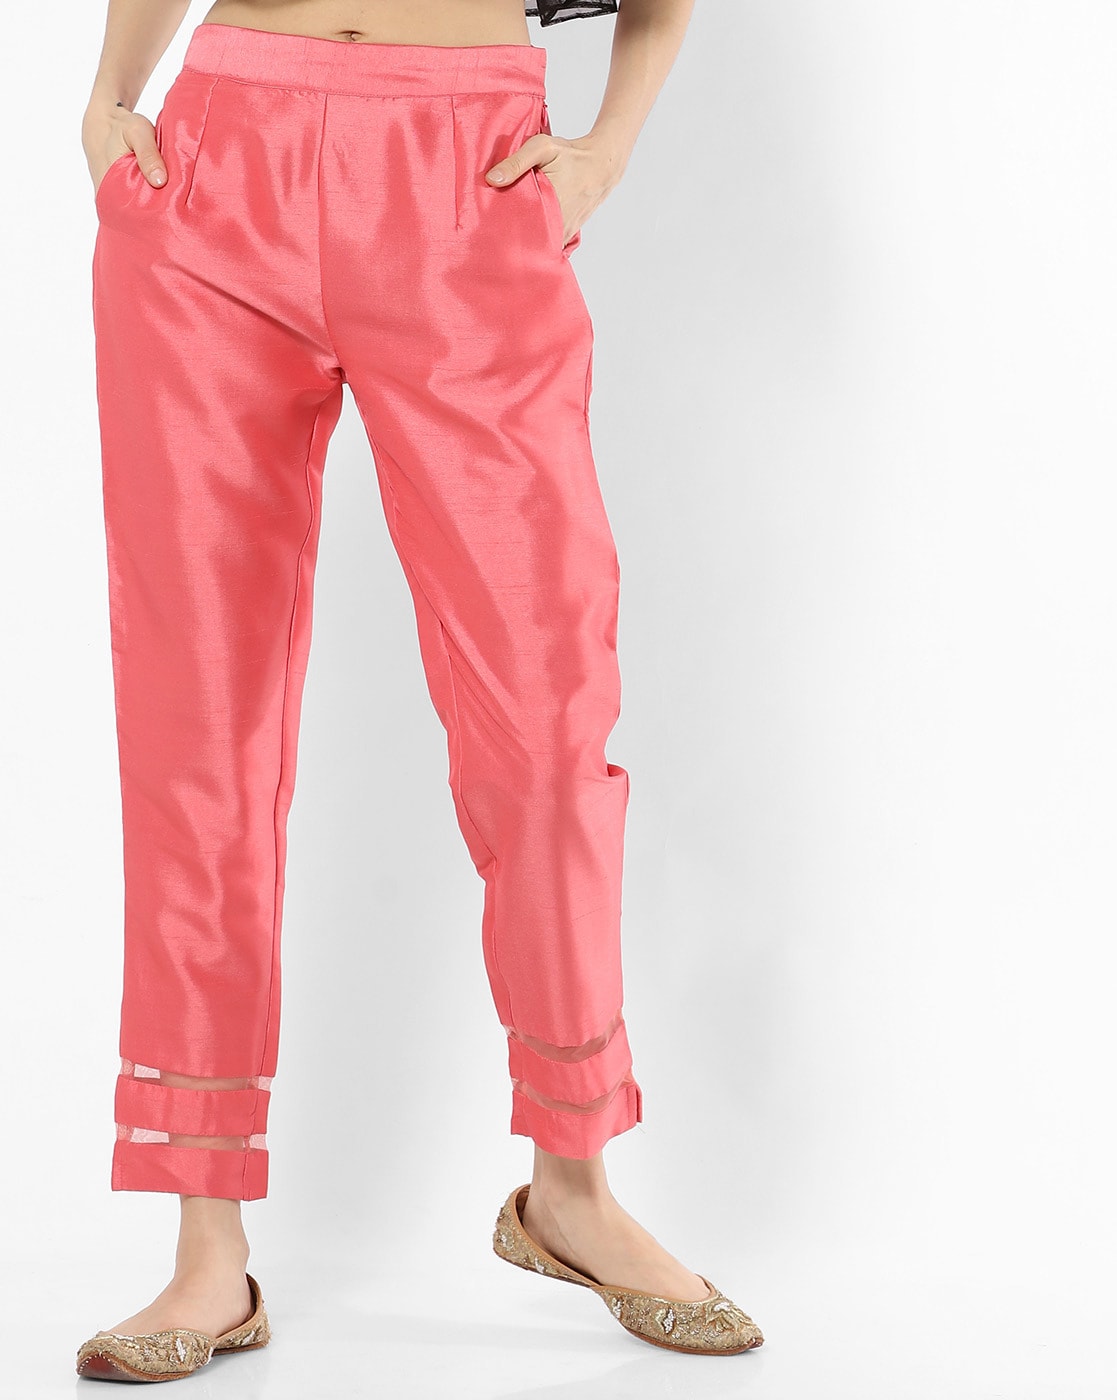 Light pink plus size cigarette pencil pants & trousers for women xxxxl to  xxxxxl.